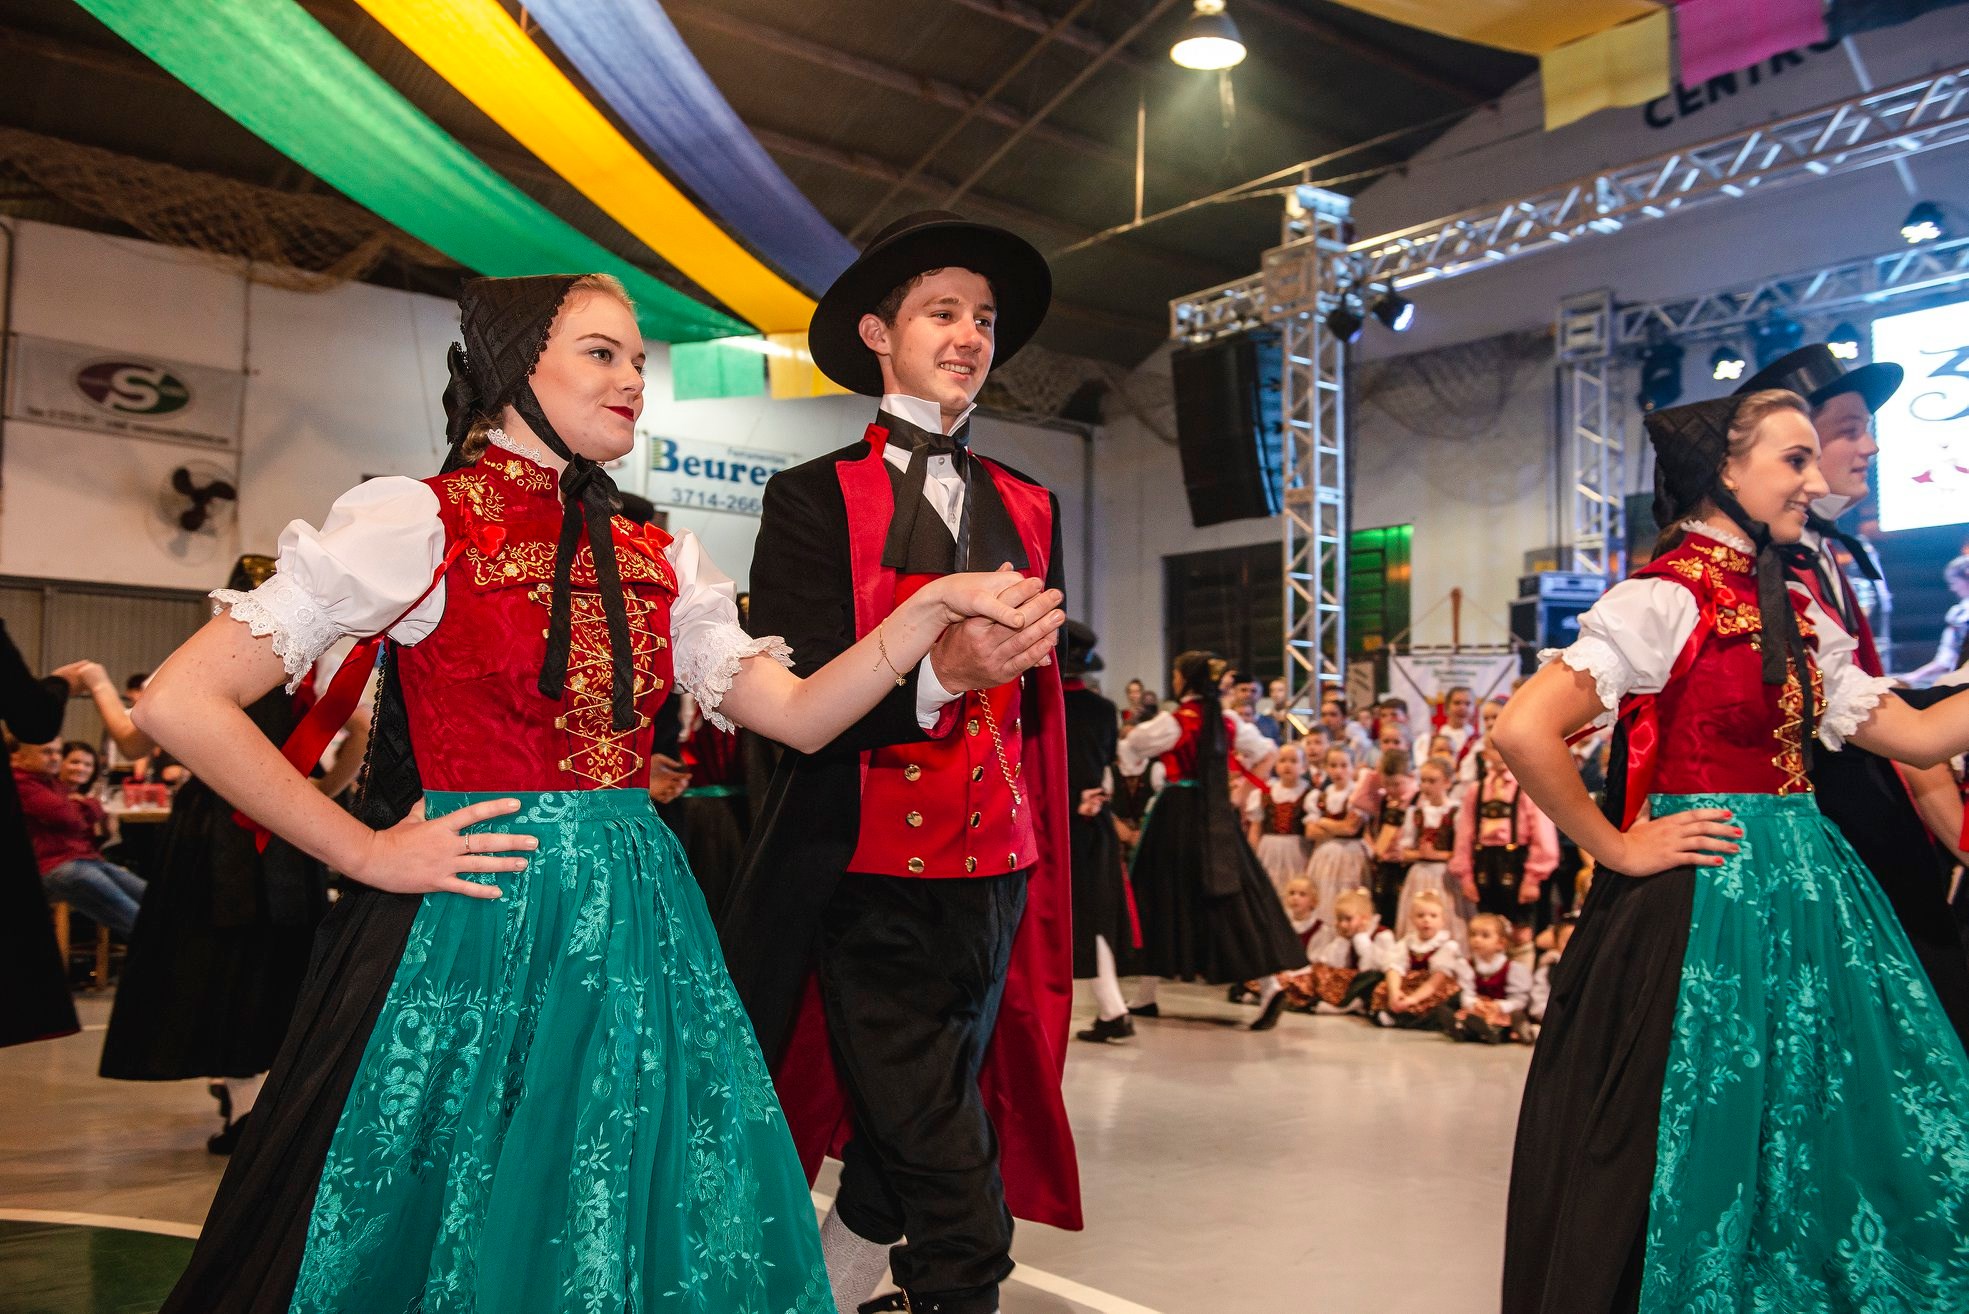 Encontro de grupos de dança valoriza história e cultura germânica